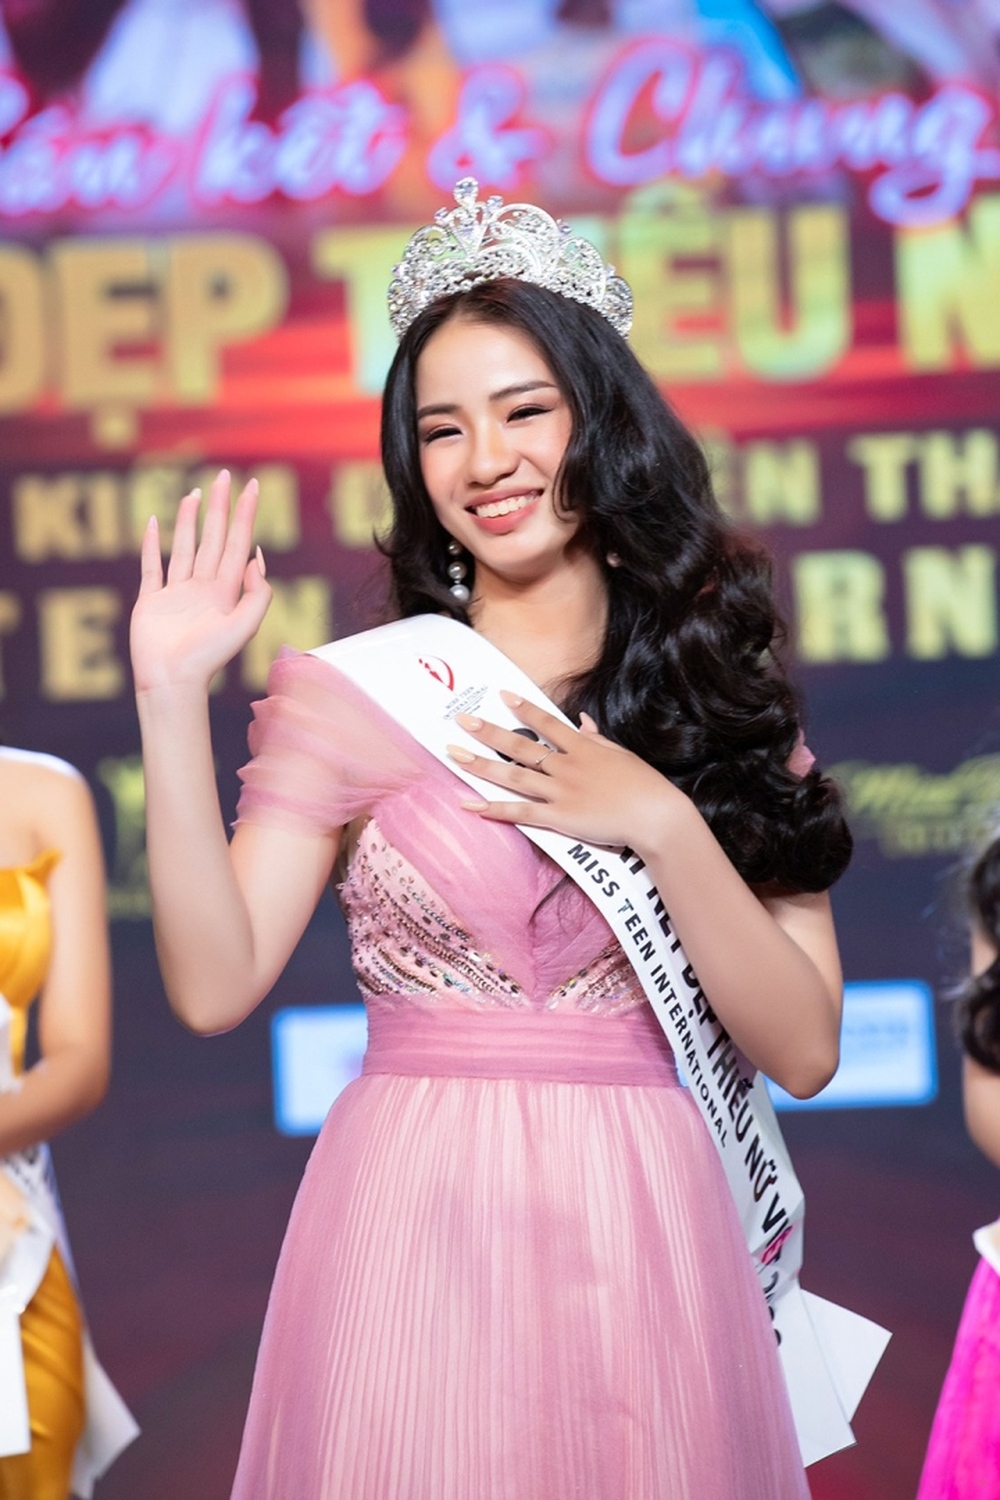 Nữ sinh 19 tuổi đăng quang Hoa khôi Nét đẹp Thiếu nữ Việt 2022 - Ảnh 2.